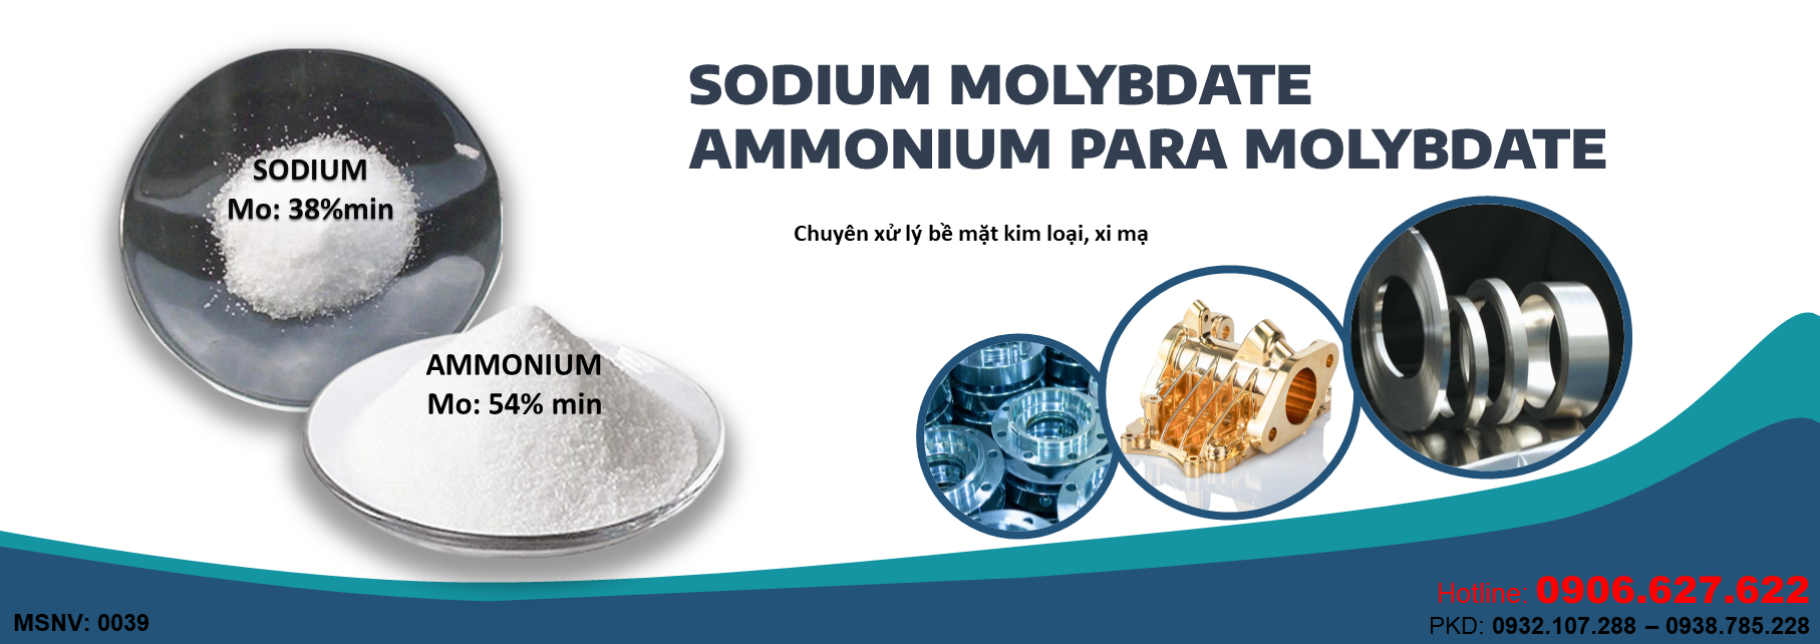 Sodium/Ammonium Para Molybdate